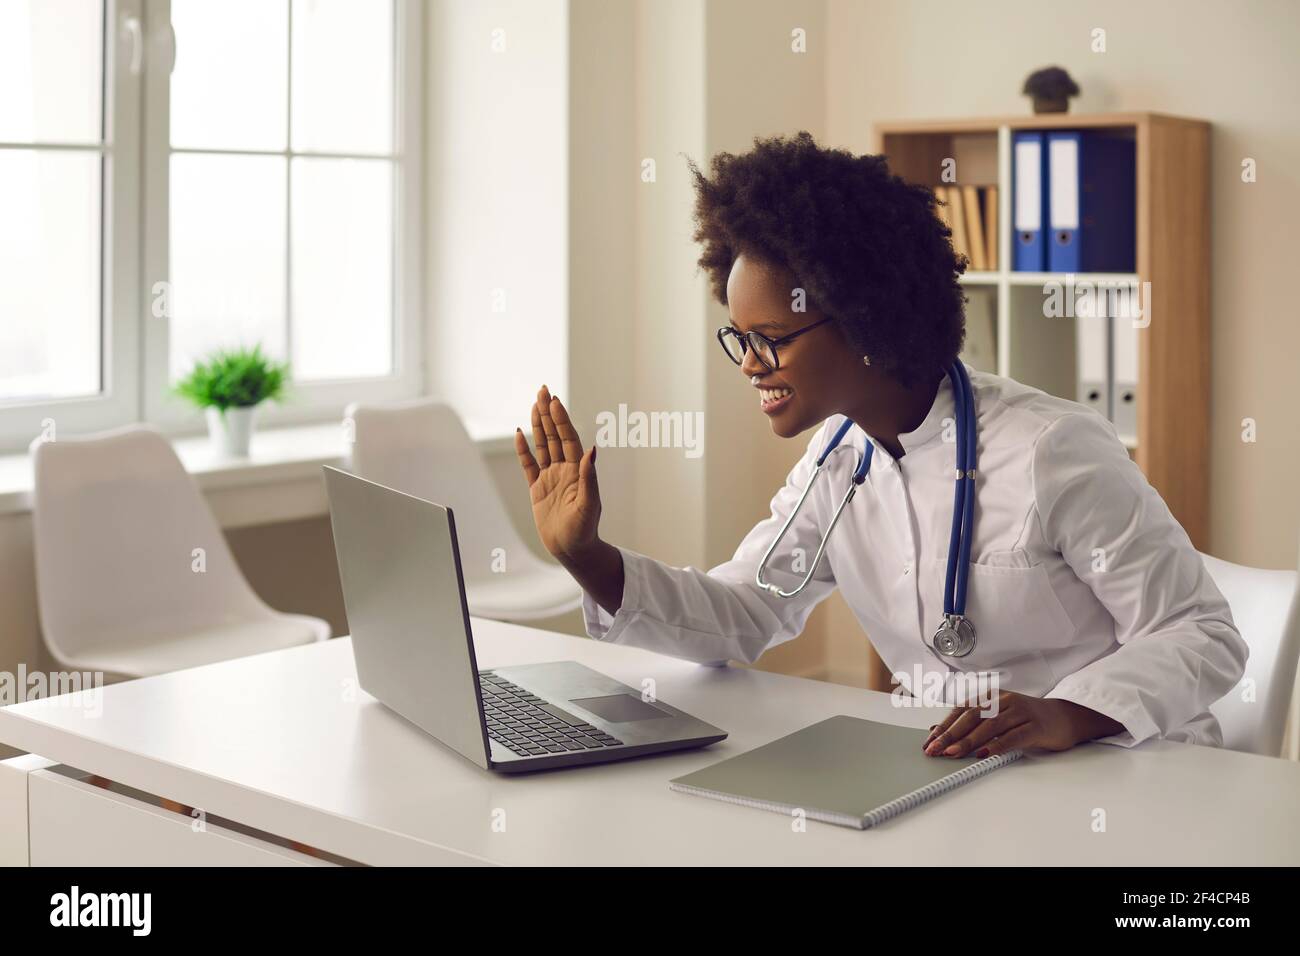 La giovane dottoressa dalla pelle scura fornisce una consultazione online al paziente tramite collegamento video. Foto Stock